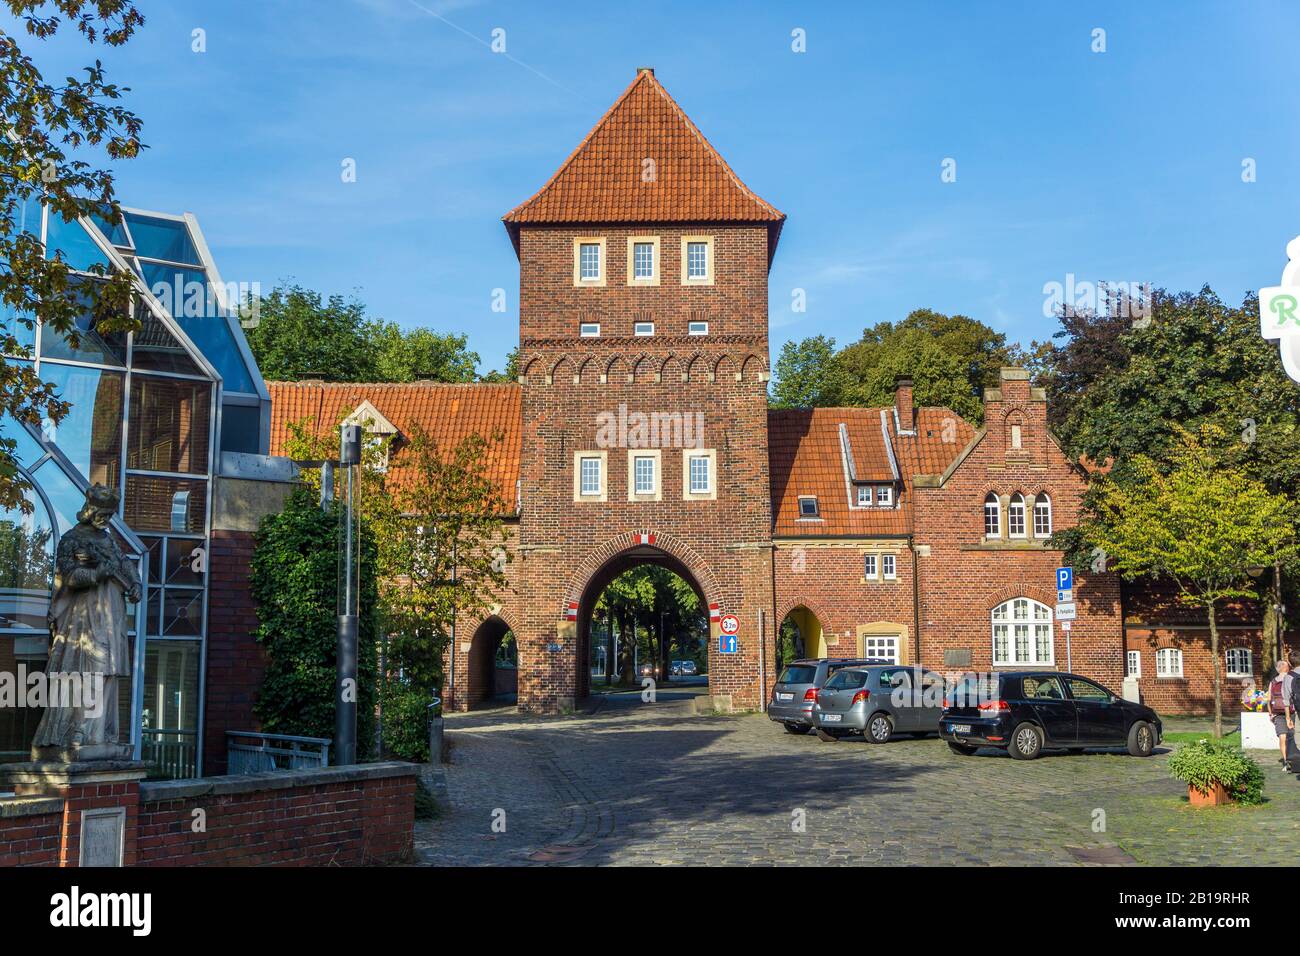 Historisches Stadttor Walkenbrückentor in Coesfeld, Nordrhein-Westfalen, Deutschland, historisches Stadttor Walkenbrückentor in Coesfeld, Nordrh Stockfoto